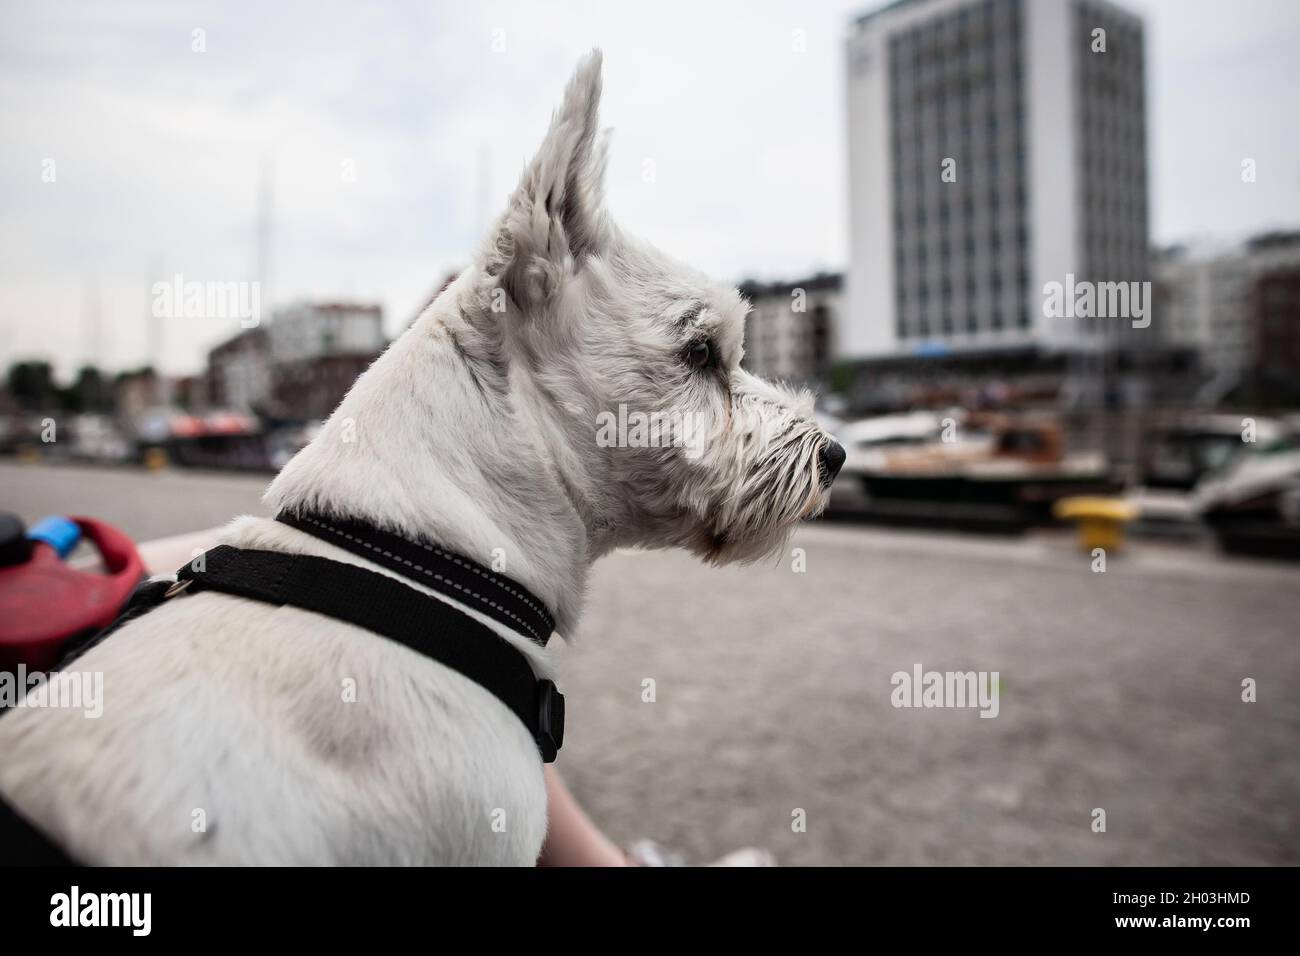 West Highland bianco terrier cane guardando le navi che navigano su un fiume, con acqua, navi ed edifici in background vista laterale da vicino Foto Stock